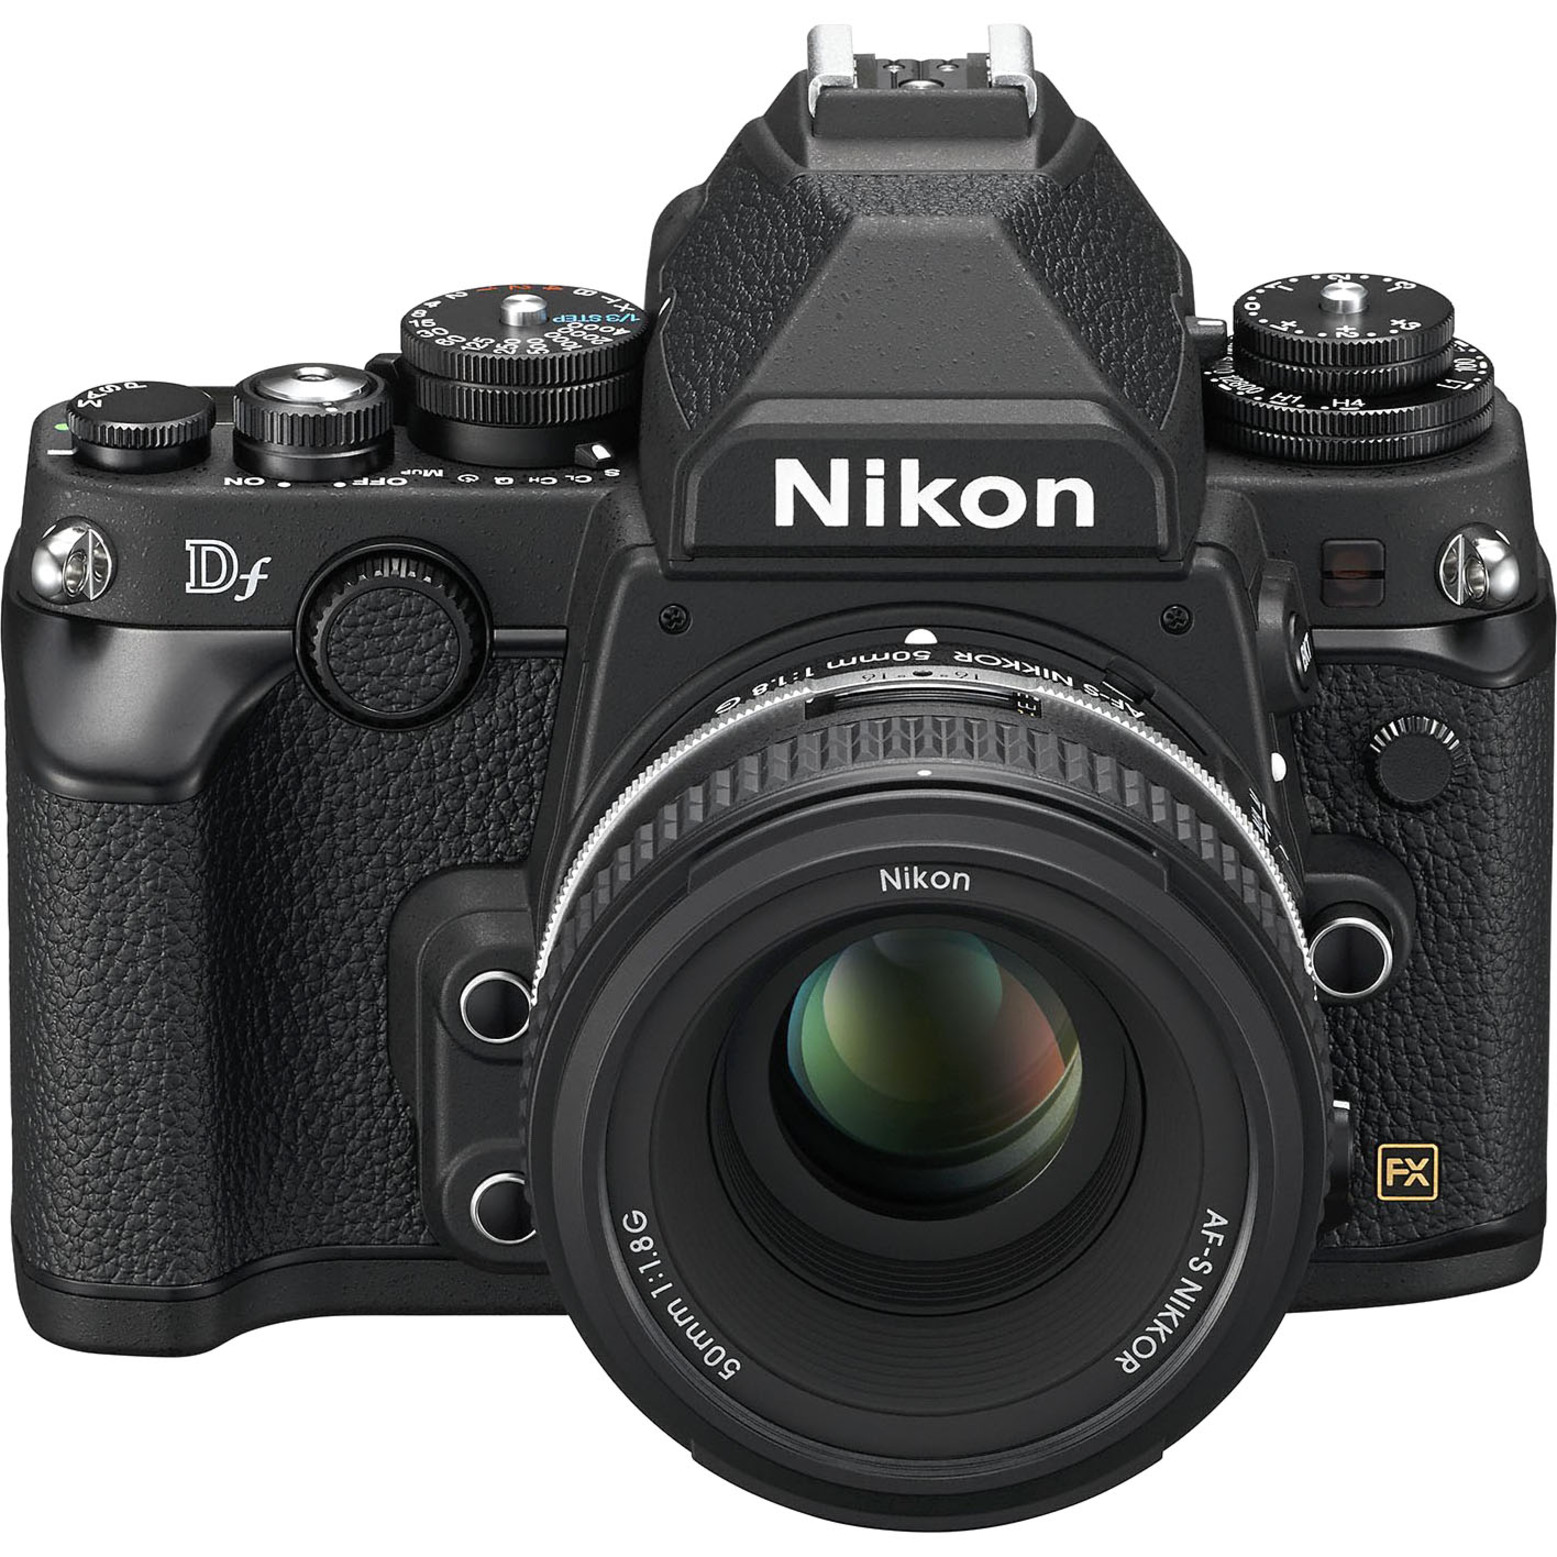 Nikon Df 16.2 Megapixel Digital SLR Camera with Lens, 1.97", Black - image 1 of 5